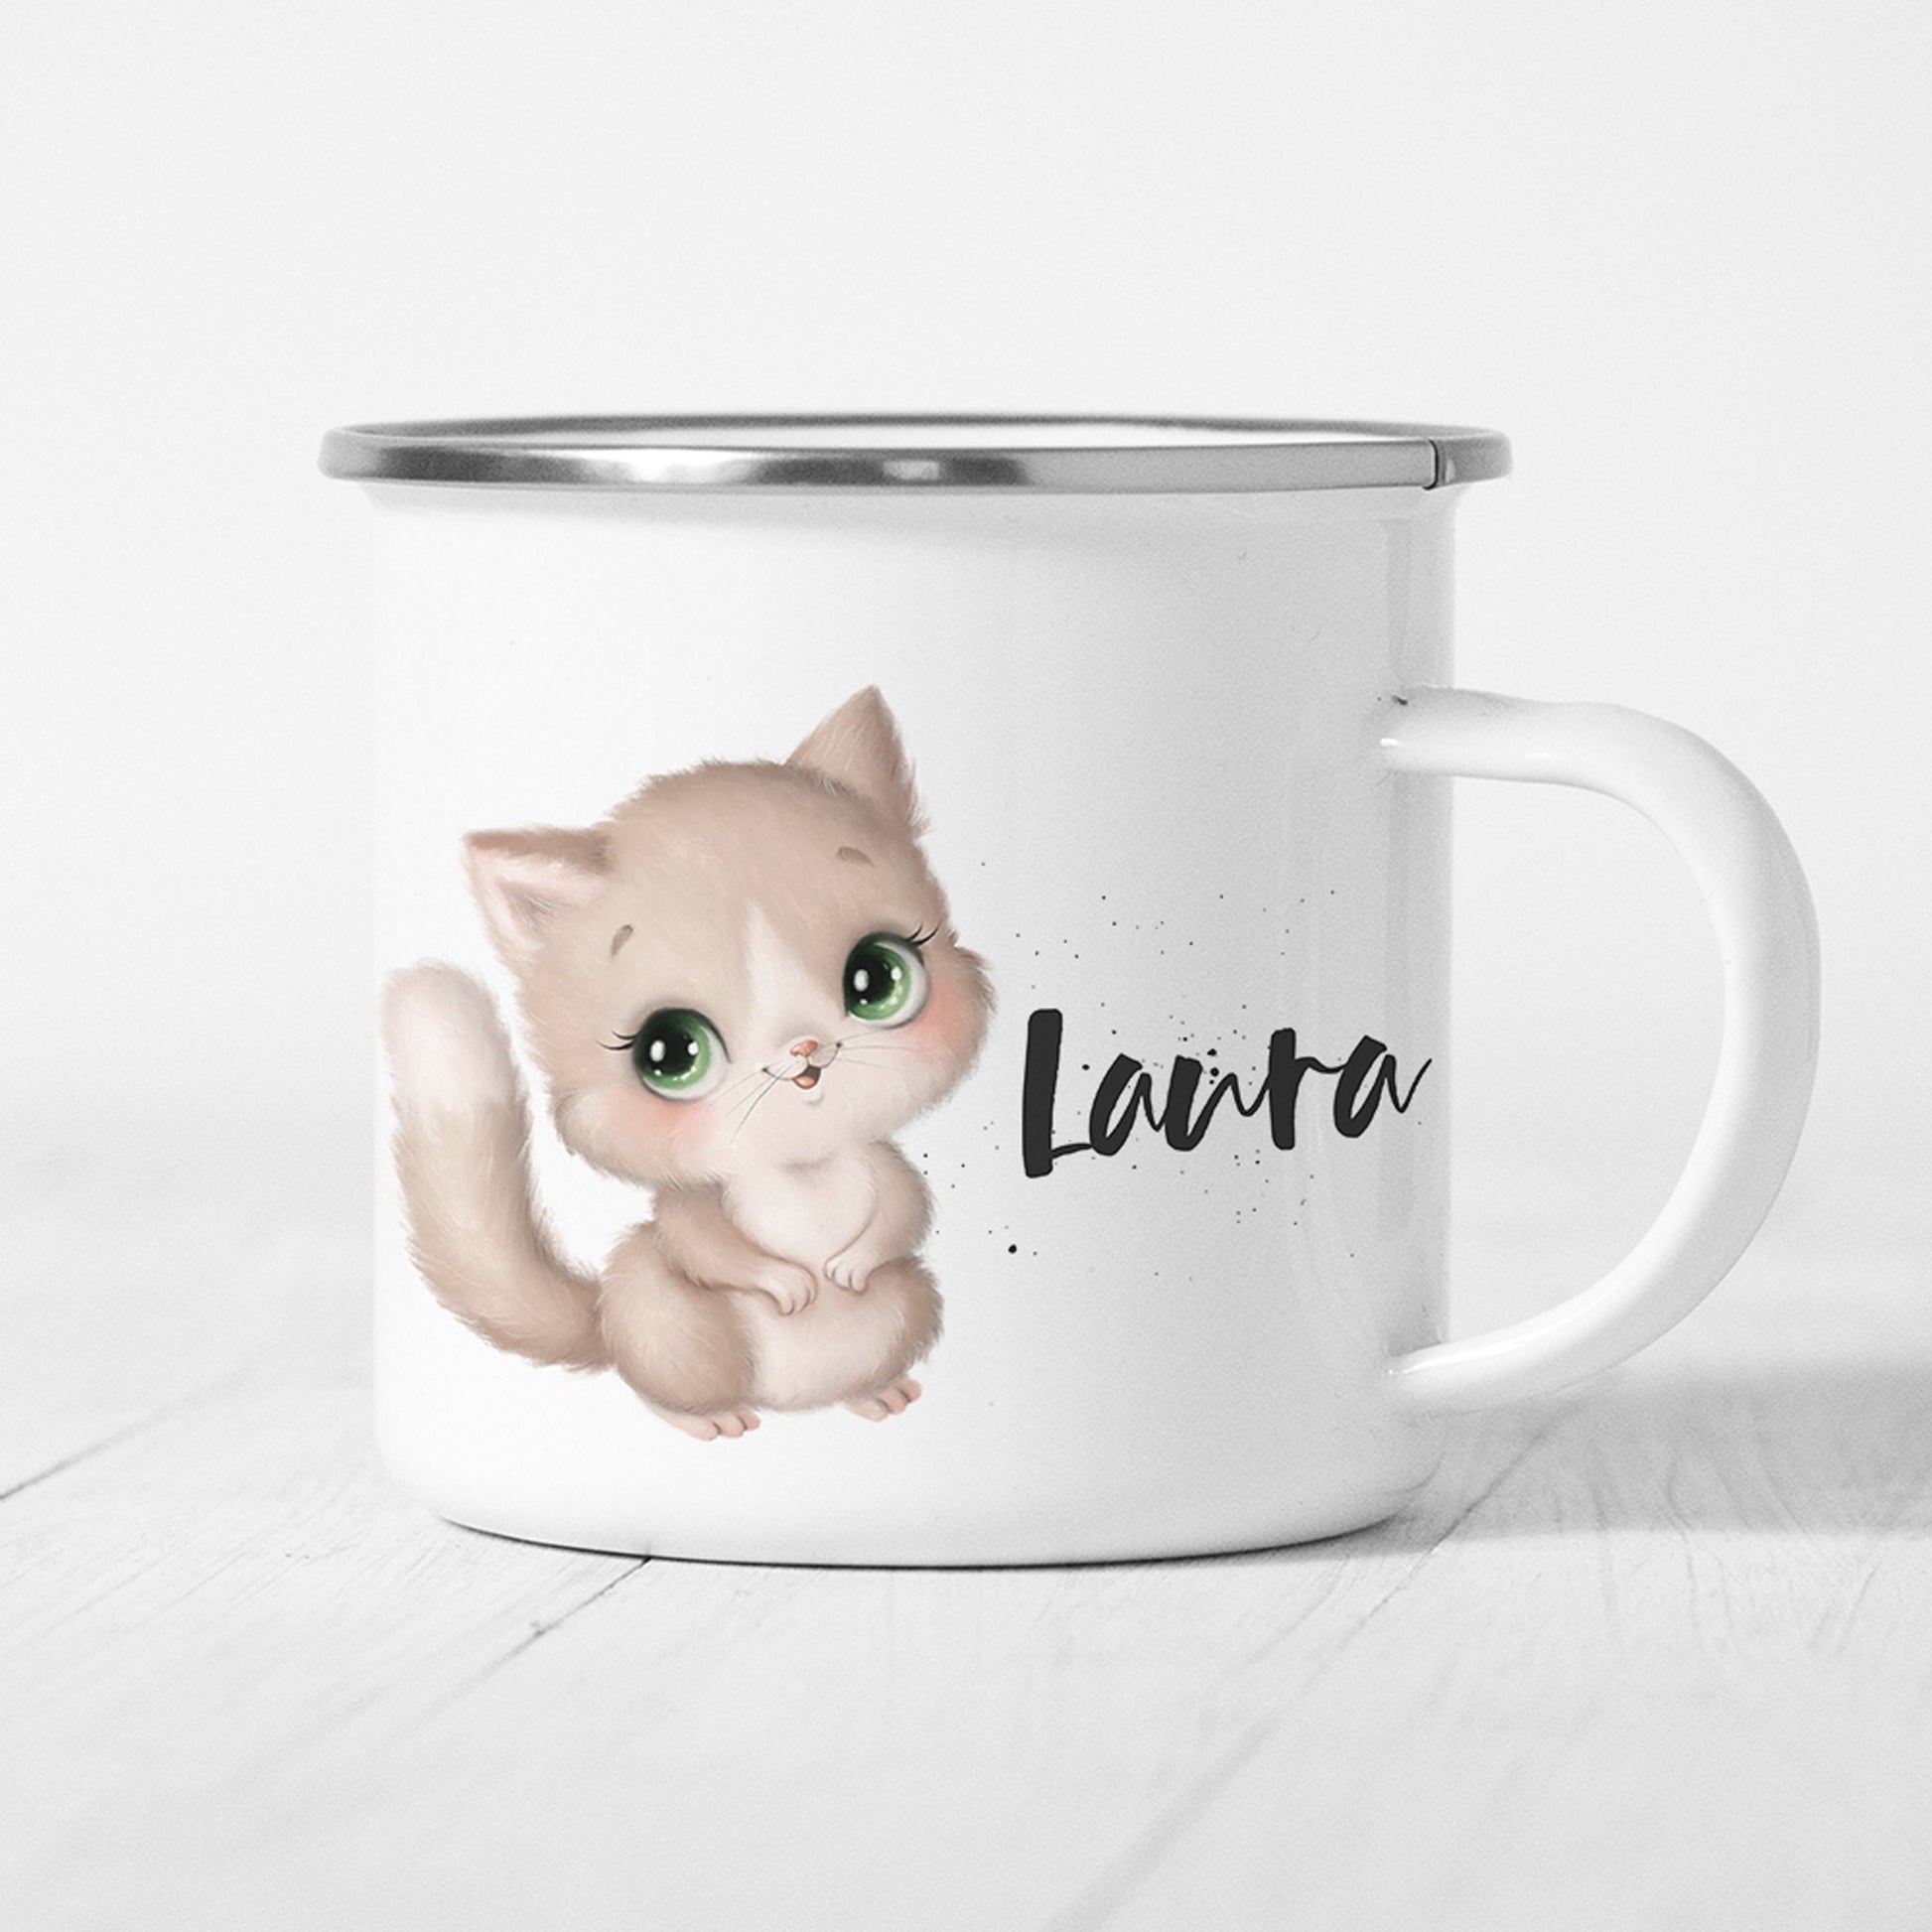 Katze Tasse Emaille Personalisiert Kätzchen Katzenbaby Kinder Becher Name Namensgeschenk Geschenk